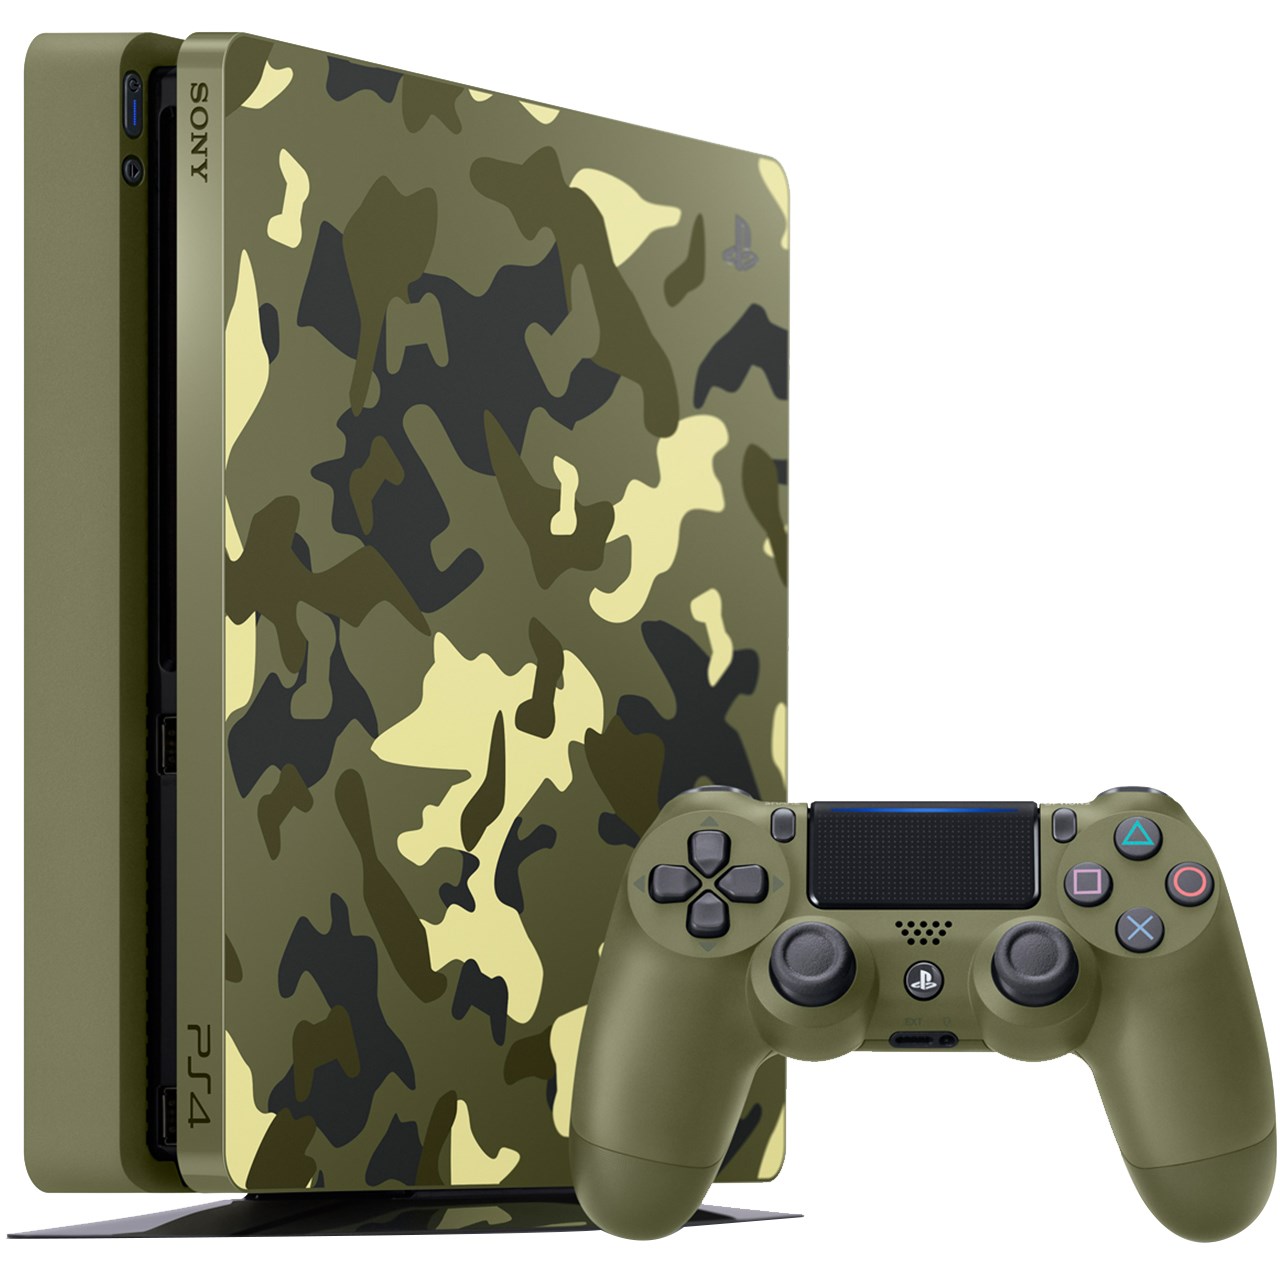 مجموعه کنسول بازی سونی مدل Playstation 4 Slim Call Of Duty Limited Edition Region 2 CUH-2116B - ظرفیت 1 ترابایت